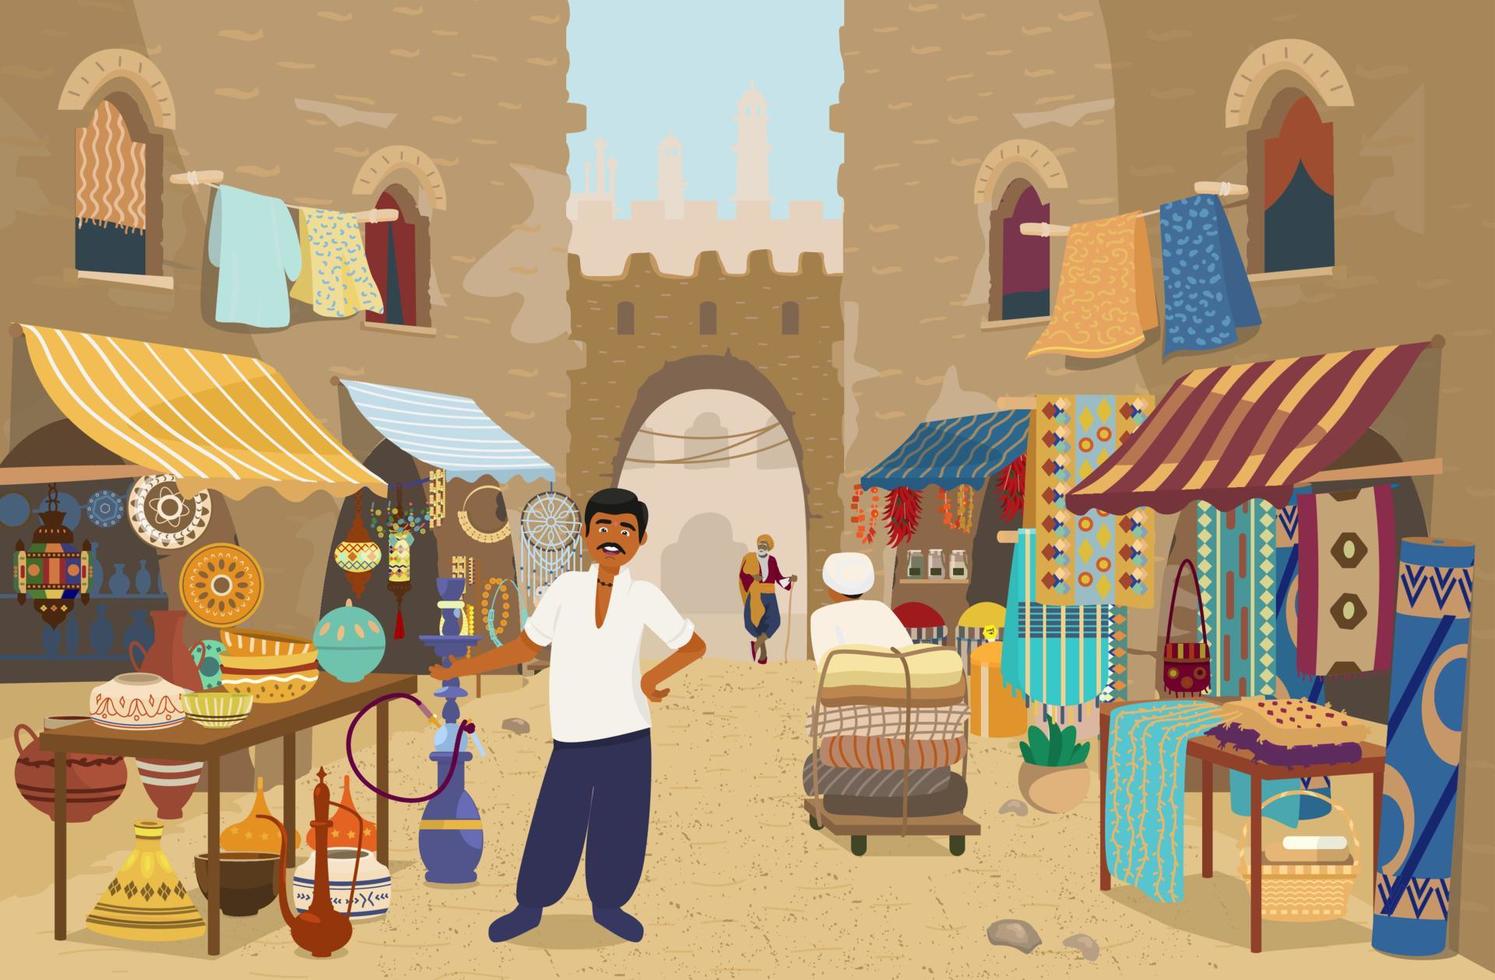 vektor illustration av indisk gata basar med människor och butiker. keramik, mattor och tyger, kryddor, smycken. asiatisk gatumarknad med autentiska varor.